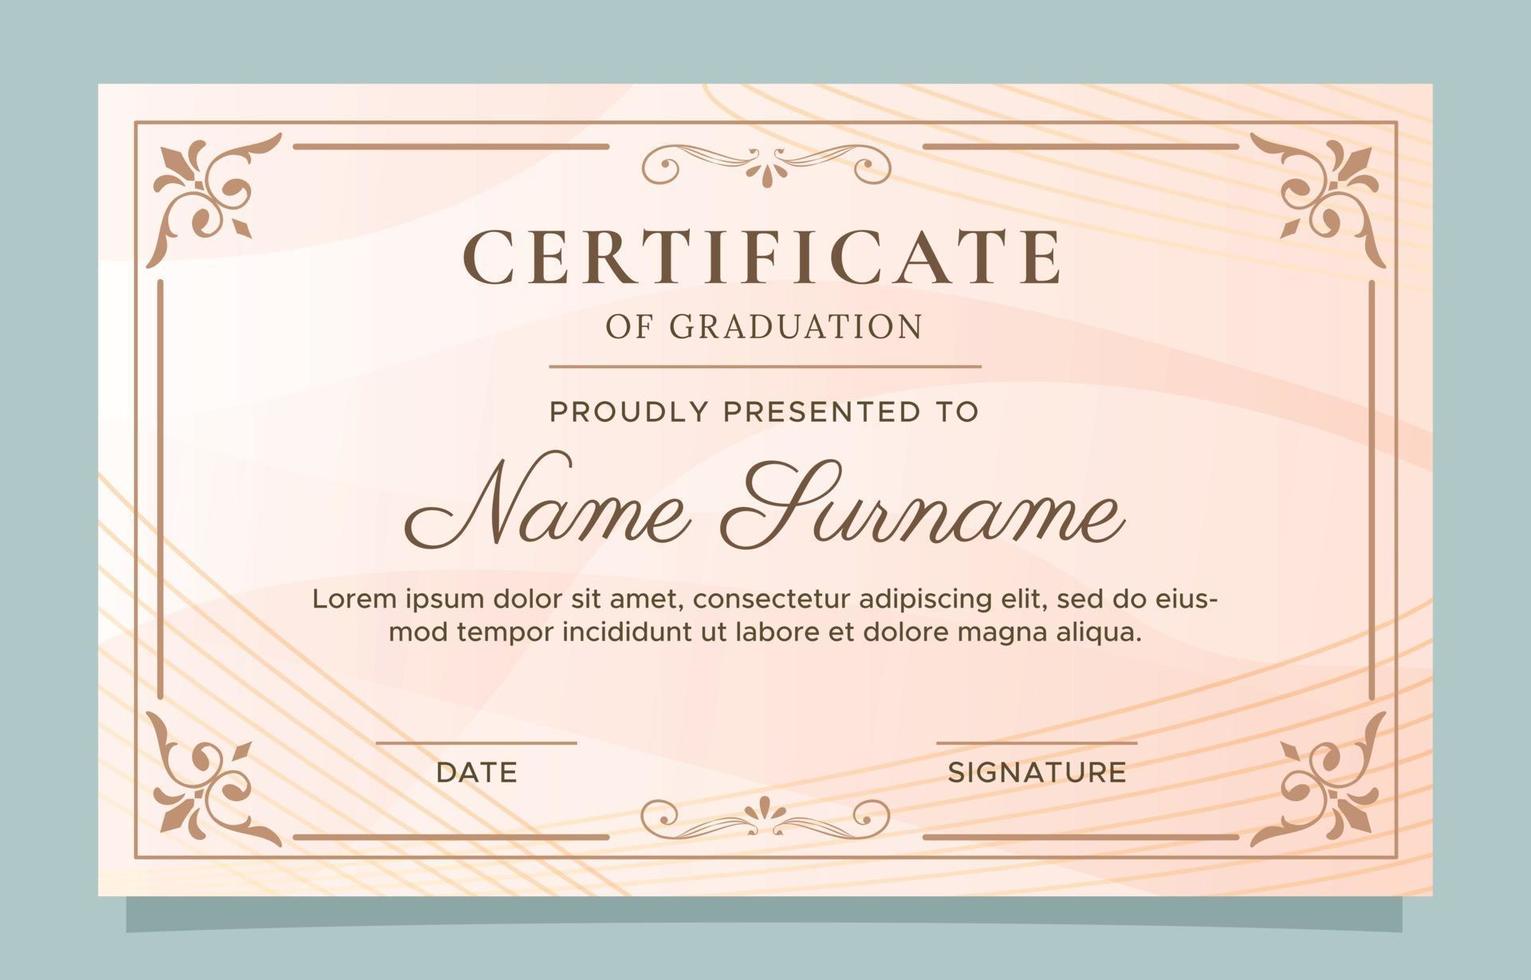 Certificate of Graduation Design Template vector